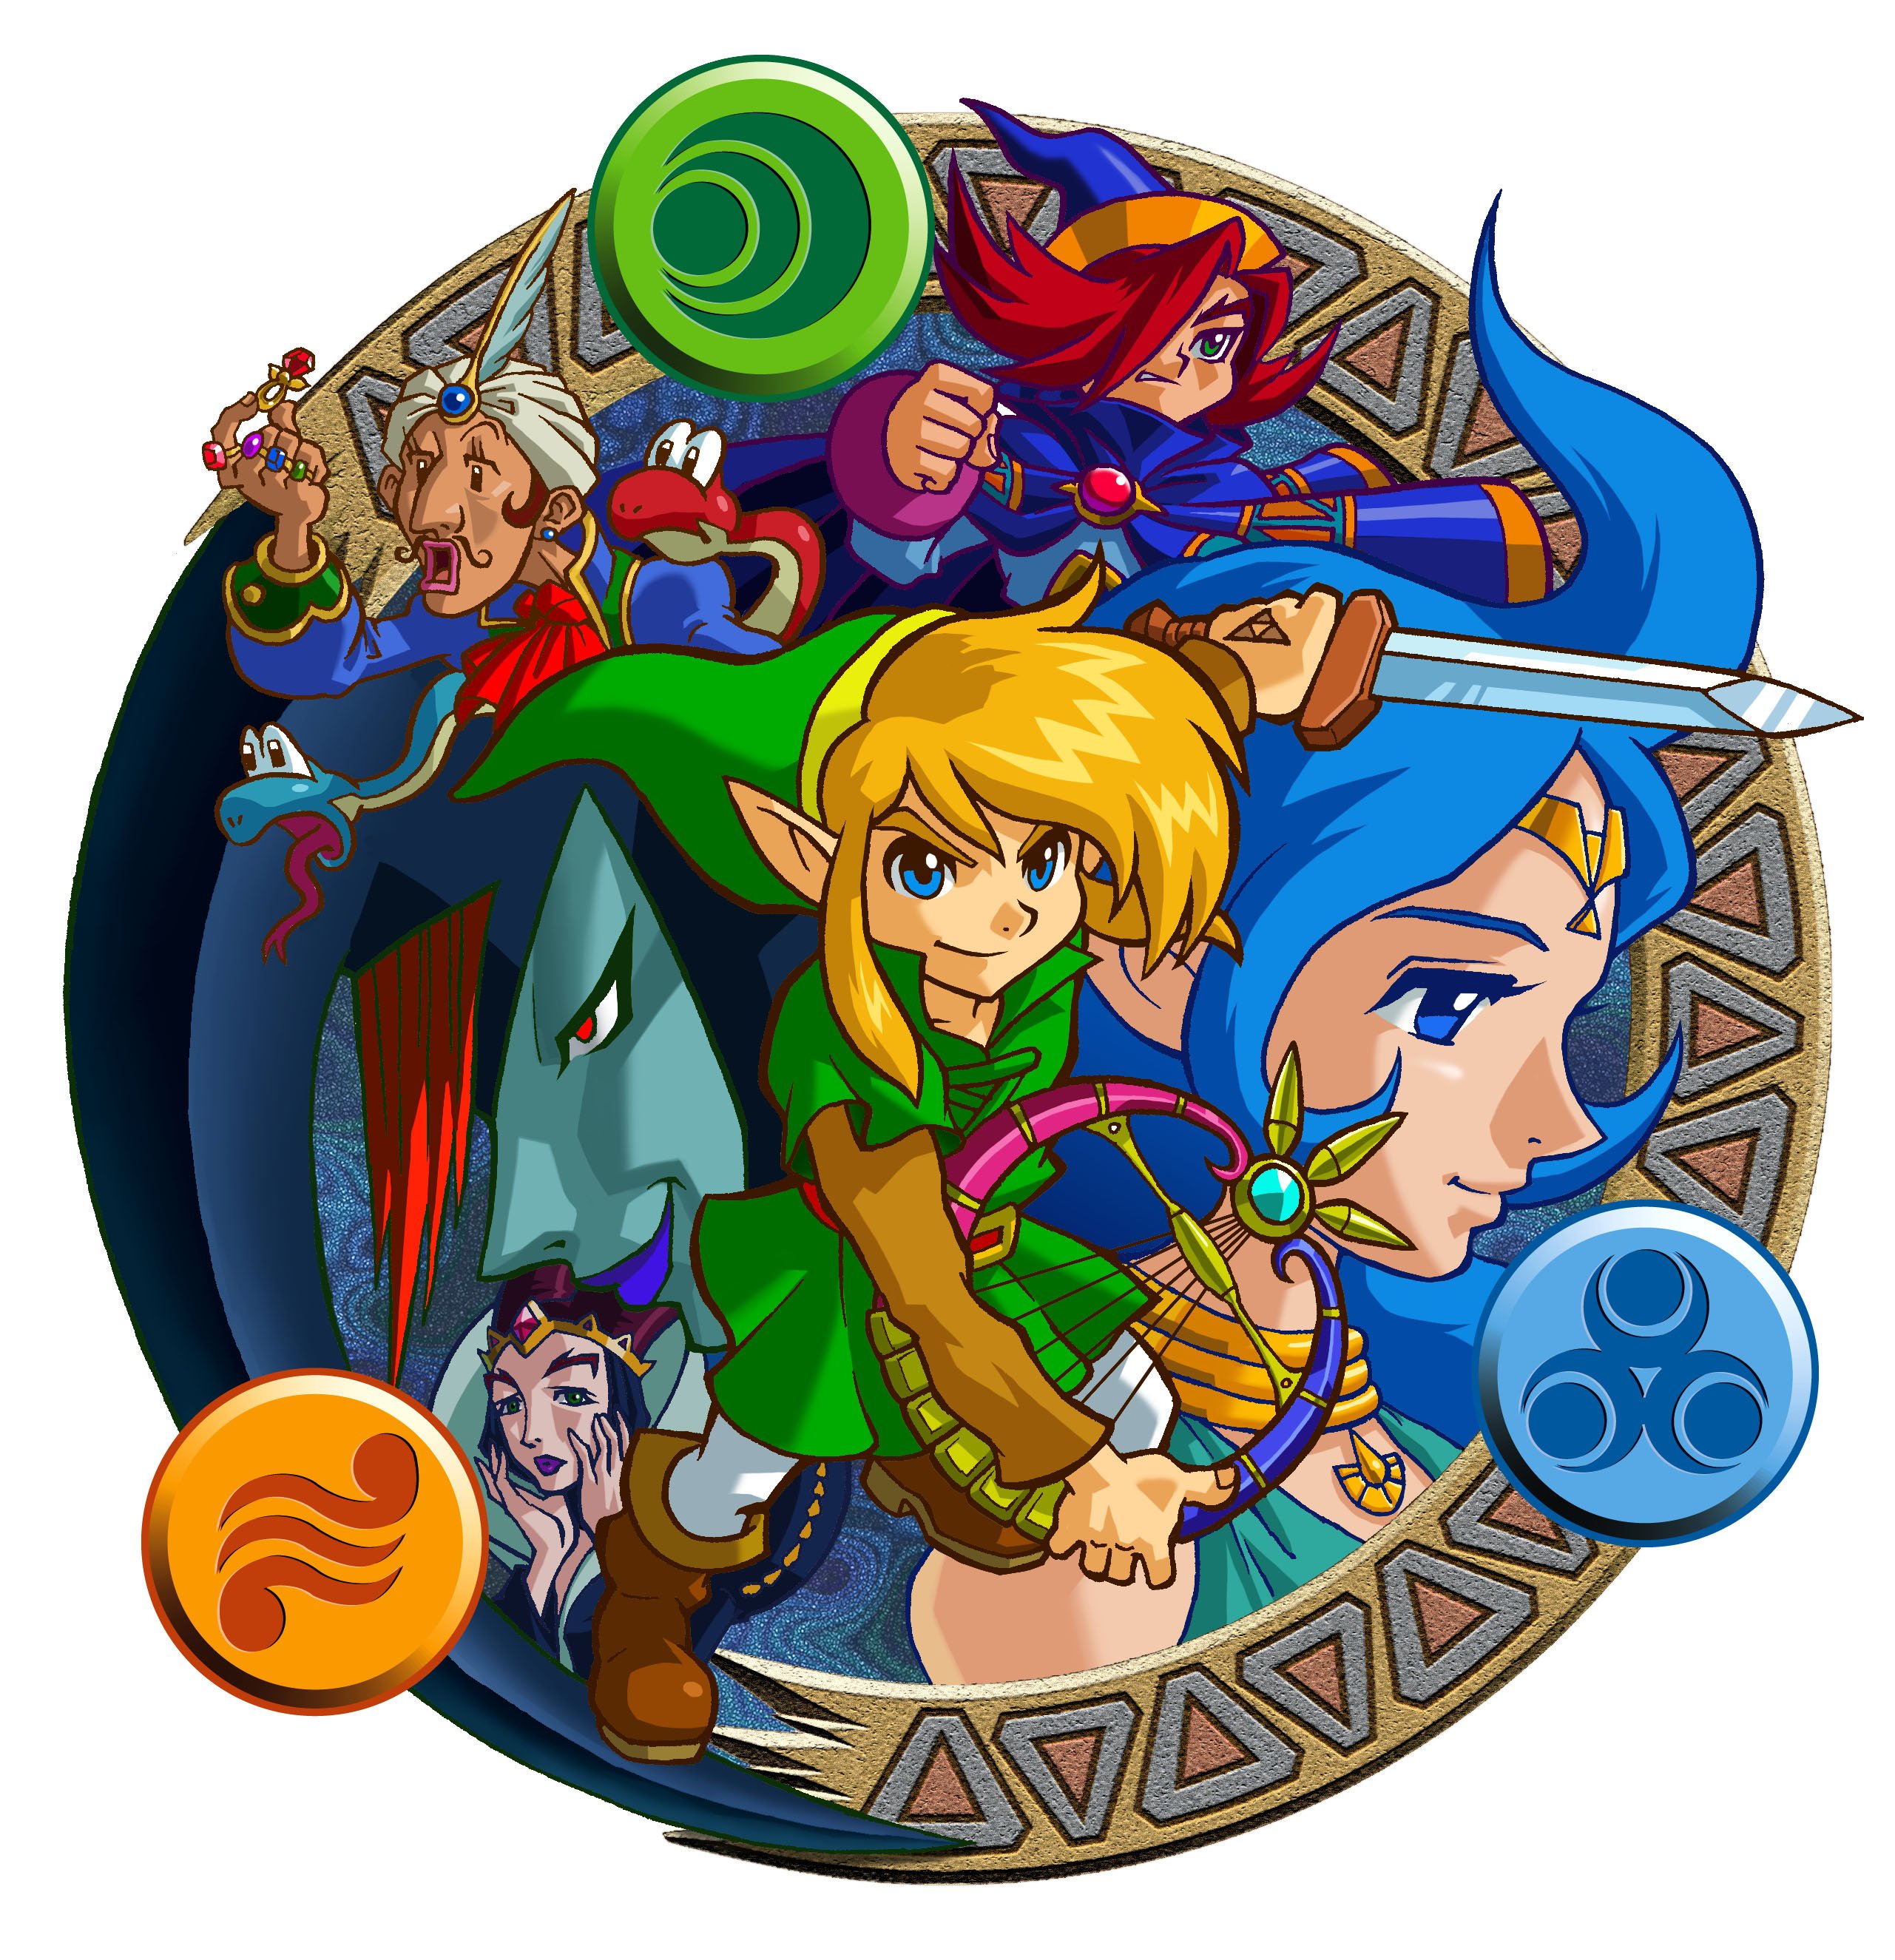 2 juegos de The Legend of Zelda han llegado a Nintendo Switch Online 1